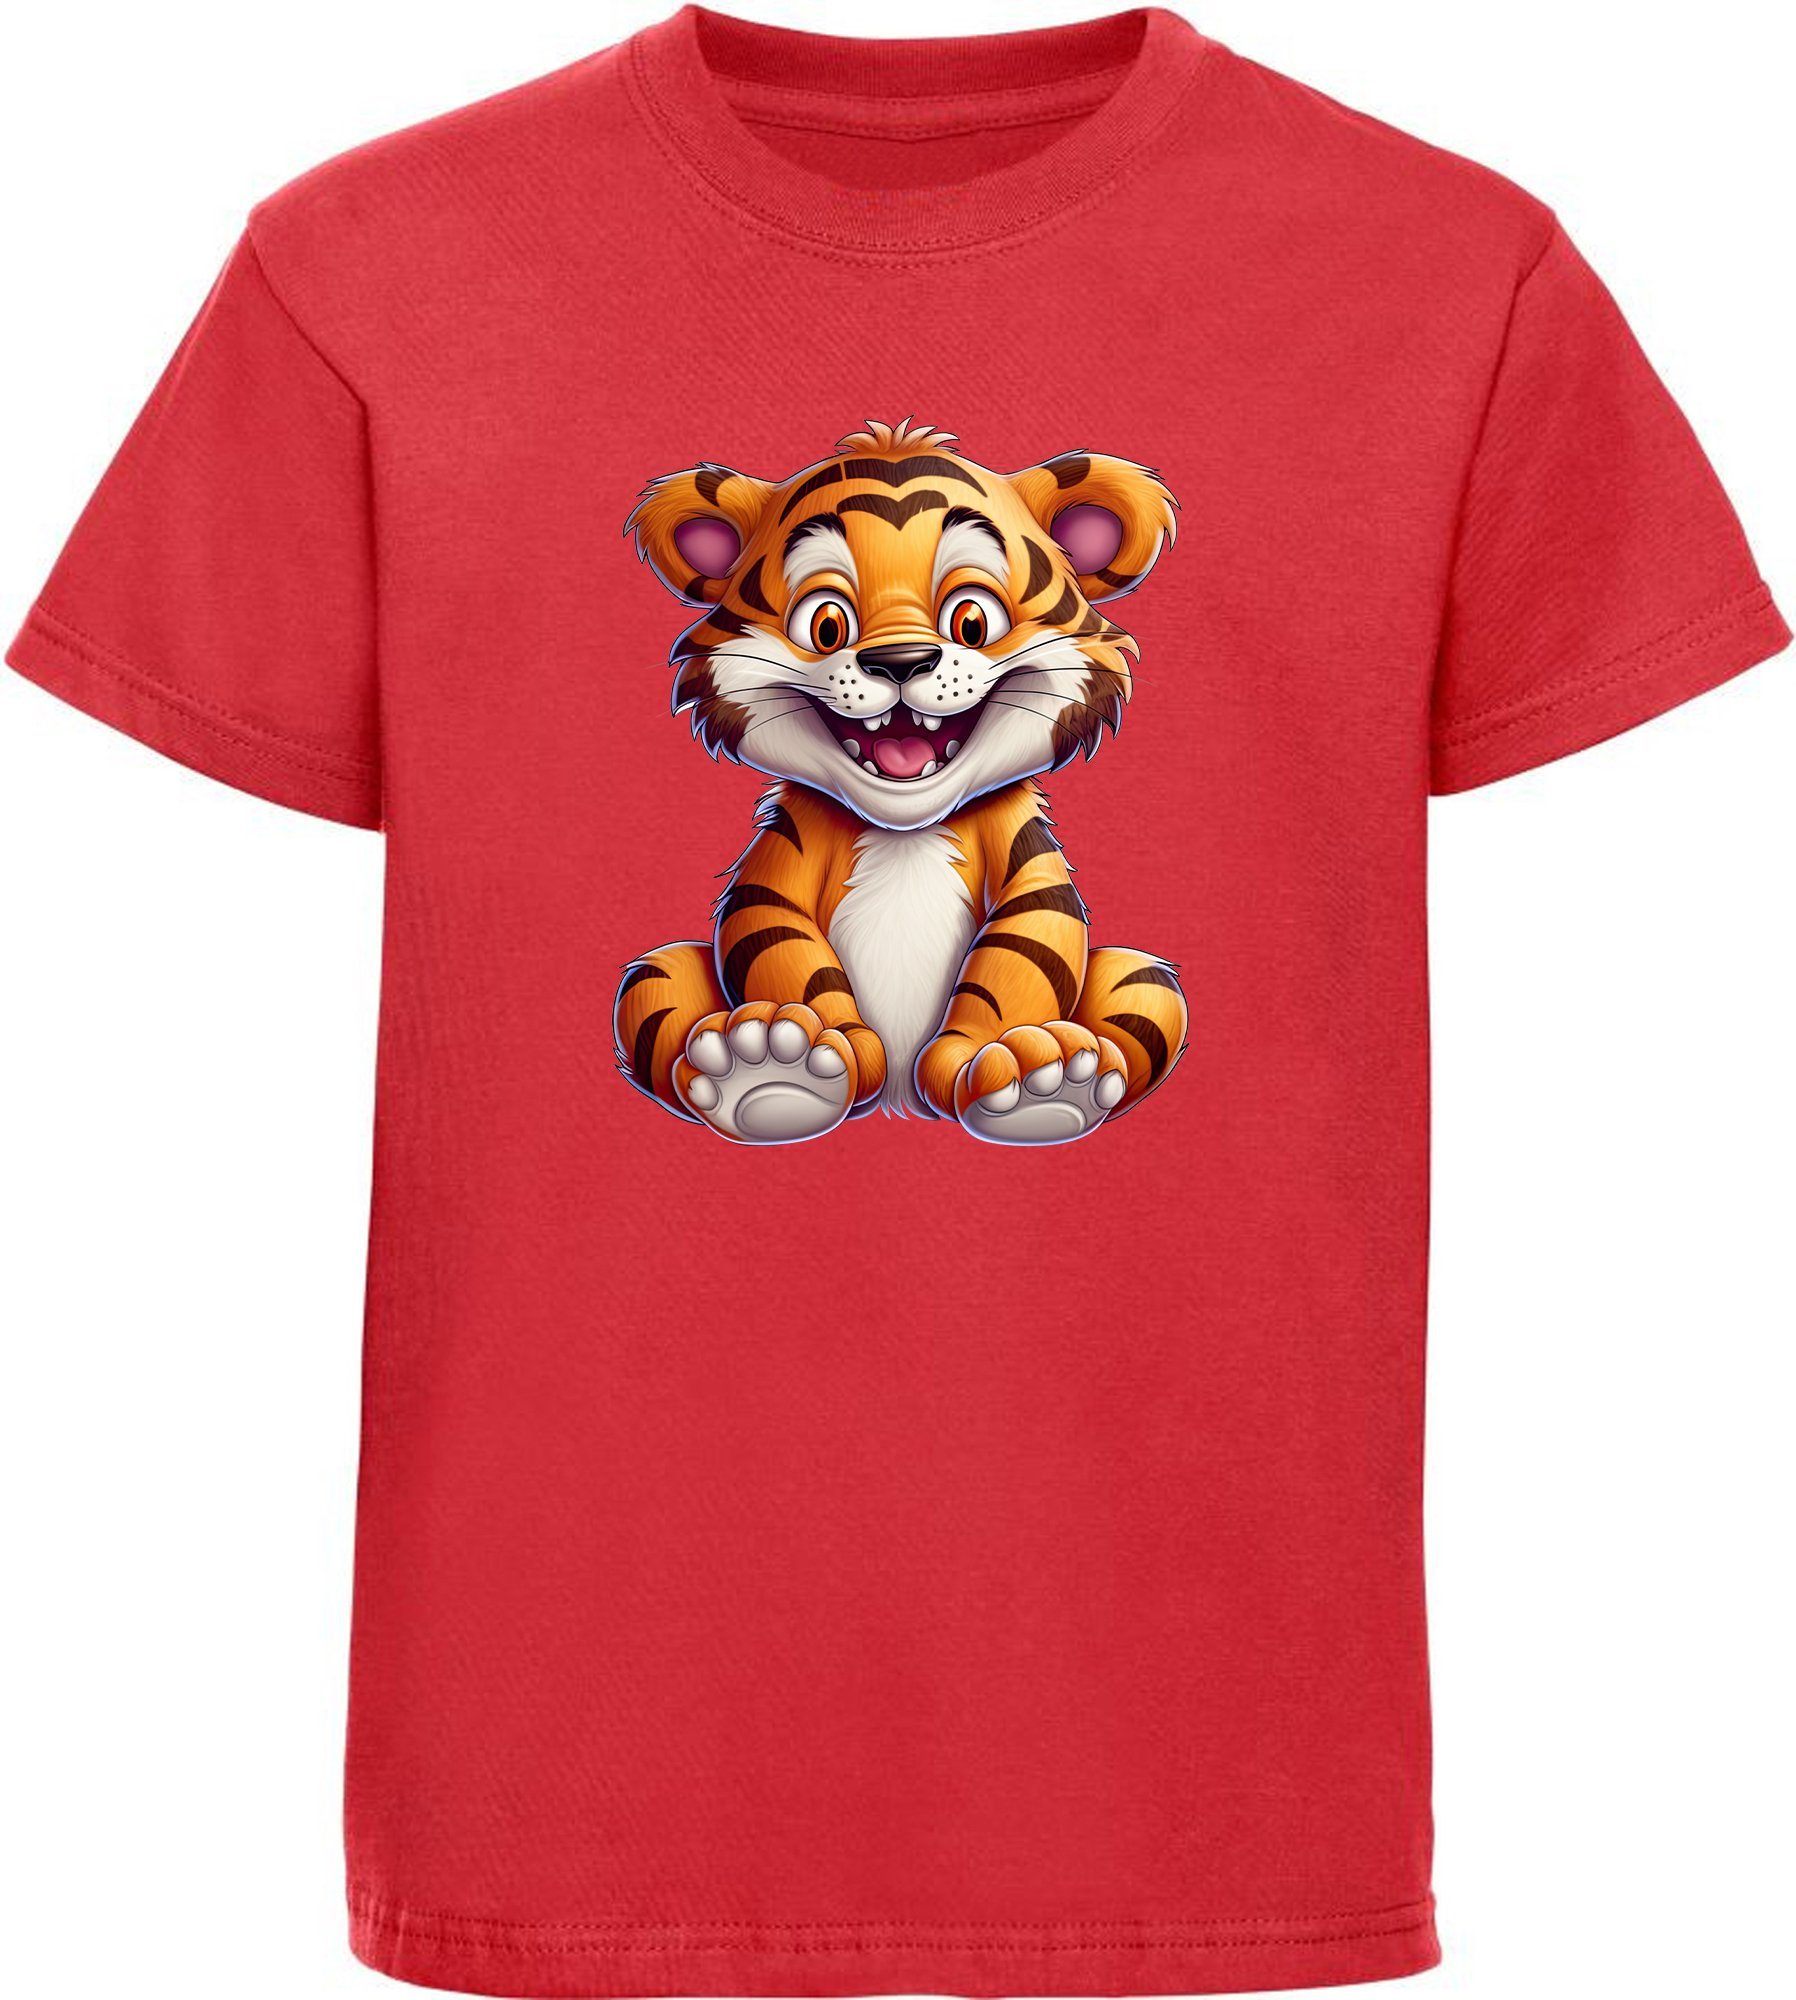 MyDesign24 T-Shirt Kinder Wildtier bedruckt Baby rot Shirt - Baumwollshirt Aufdruck, i278 Tiger mit Print